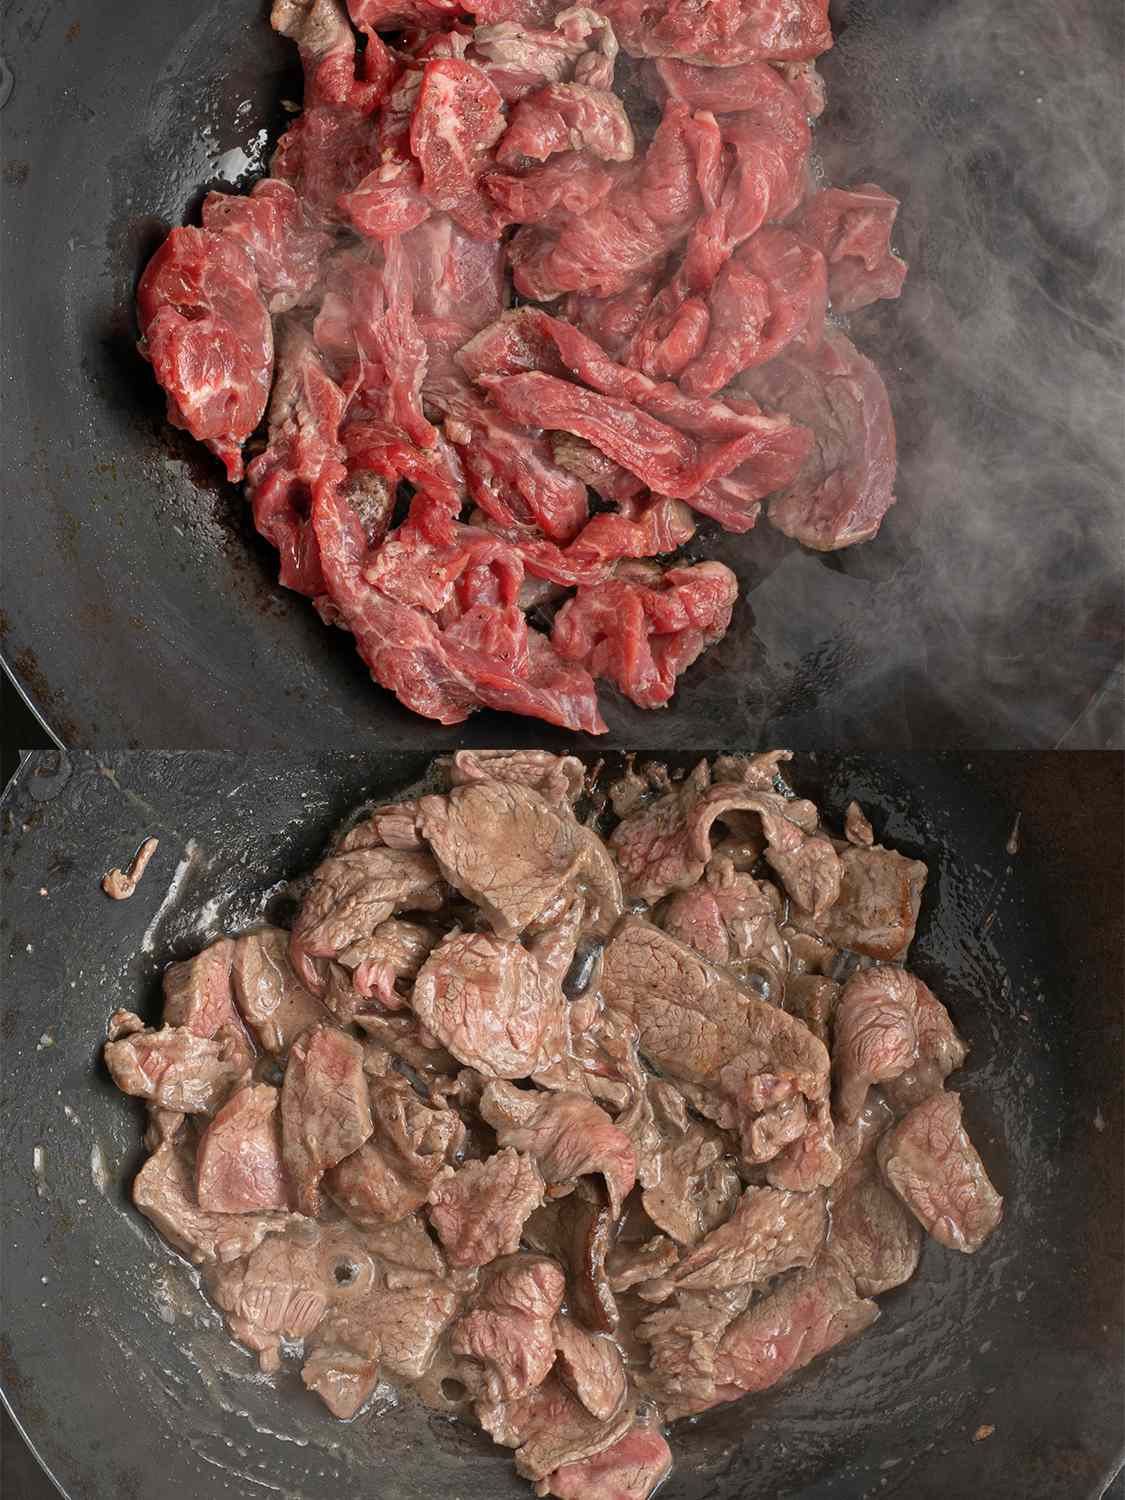 两幅图像的拼贴画。上图显示了腌好的牛肉摊在涂了油的热碳钢锅上。下面这张图显示的是几乎在锅里煮熟的牛肉。